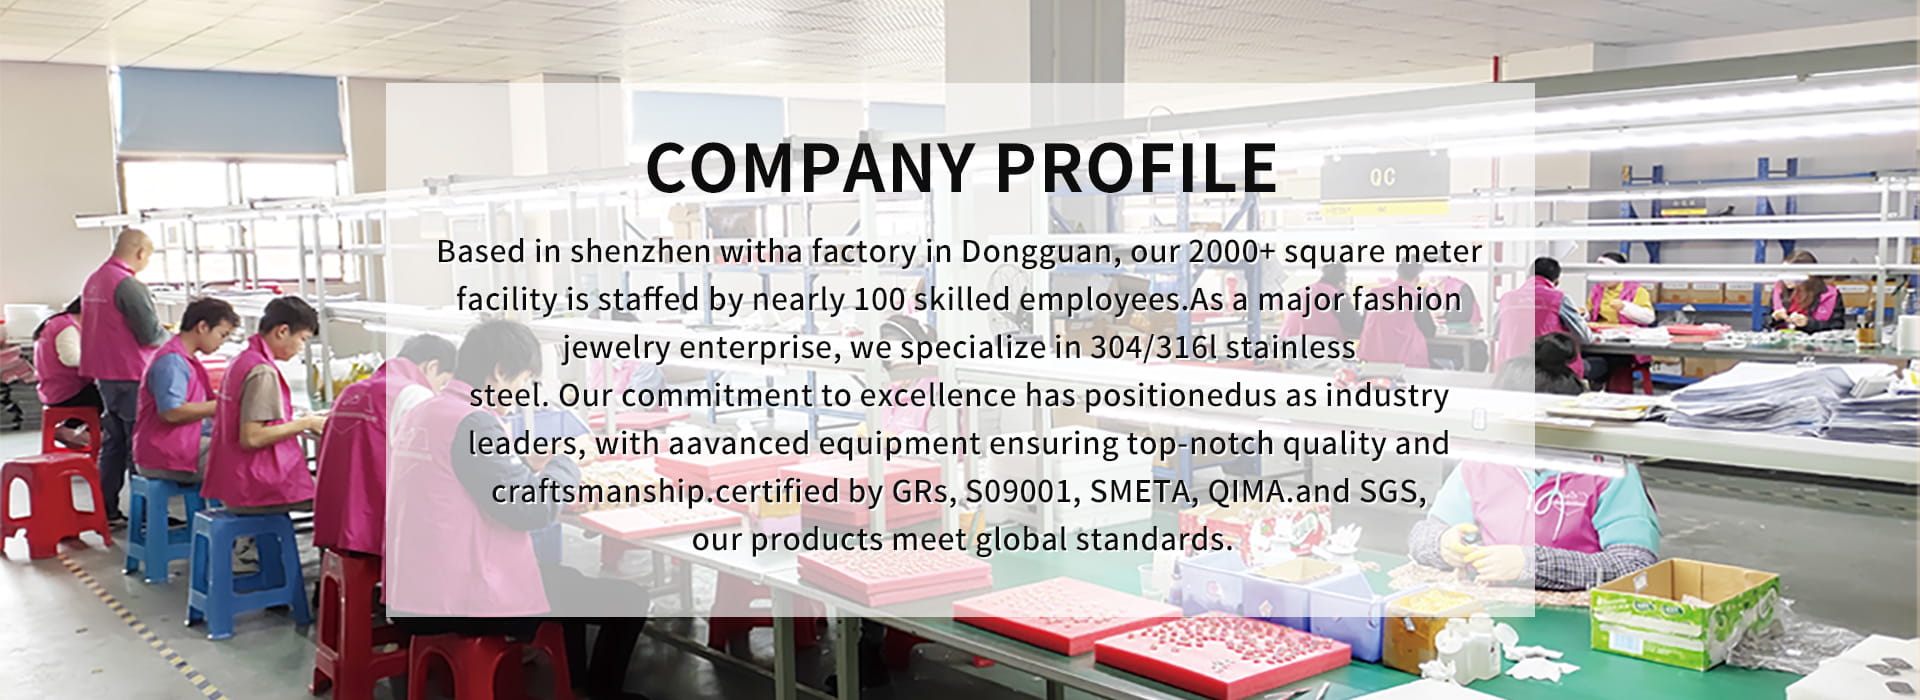 Shenzhen Loftily Jewellery Co., Ltd.